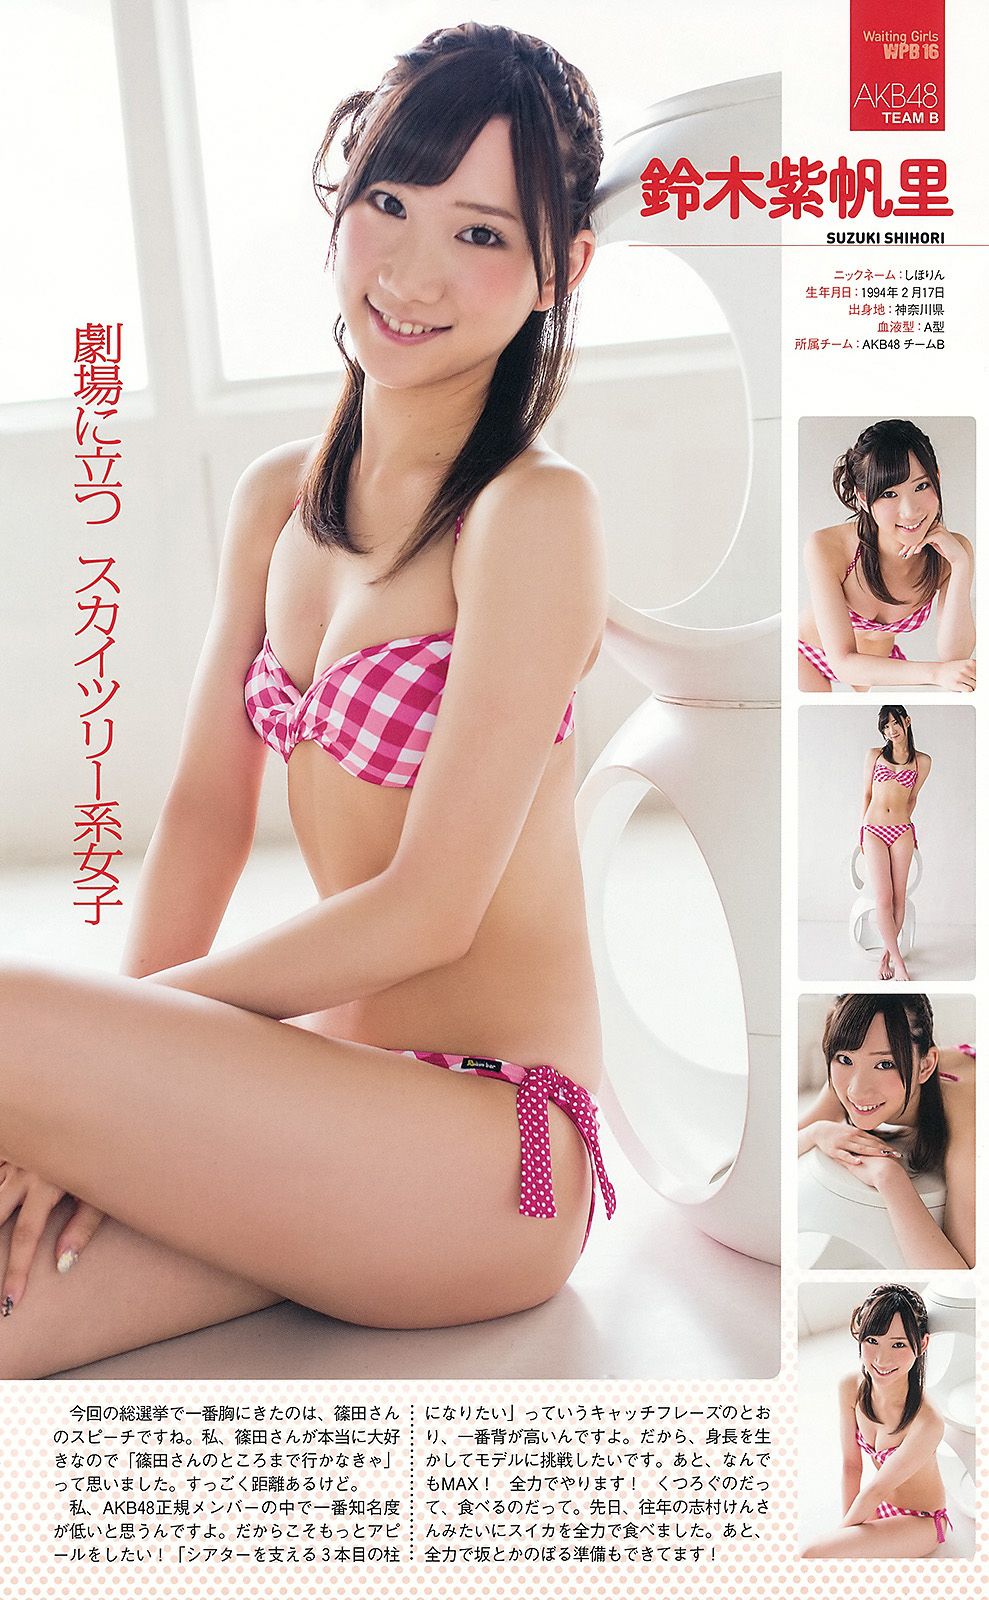 AKB48 Atsuko Maeda Riria Riria Sayaka Okada [Weekly Playboy] 2012 No.36 Photograph Page 55 No.2fb07e